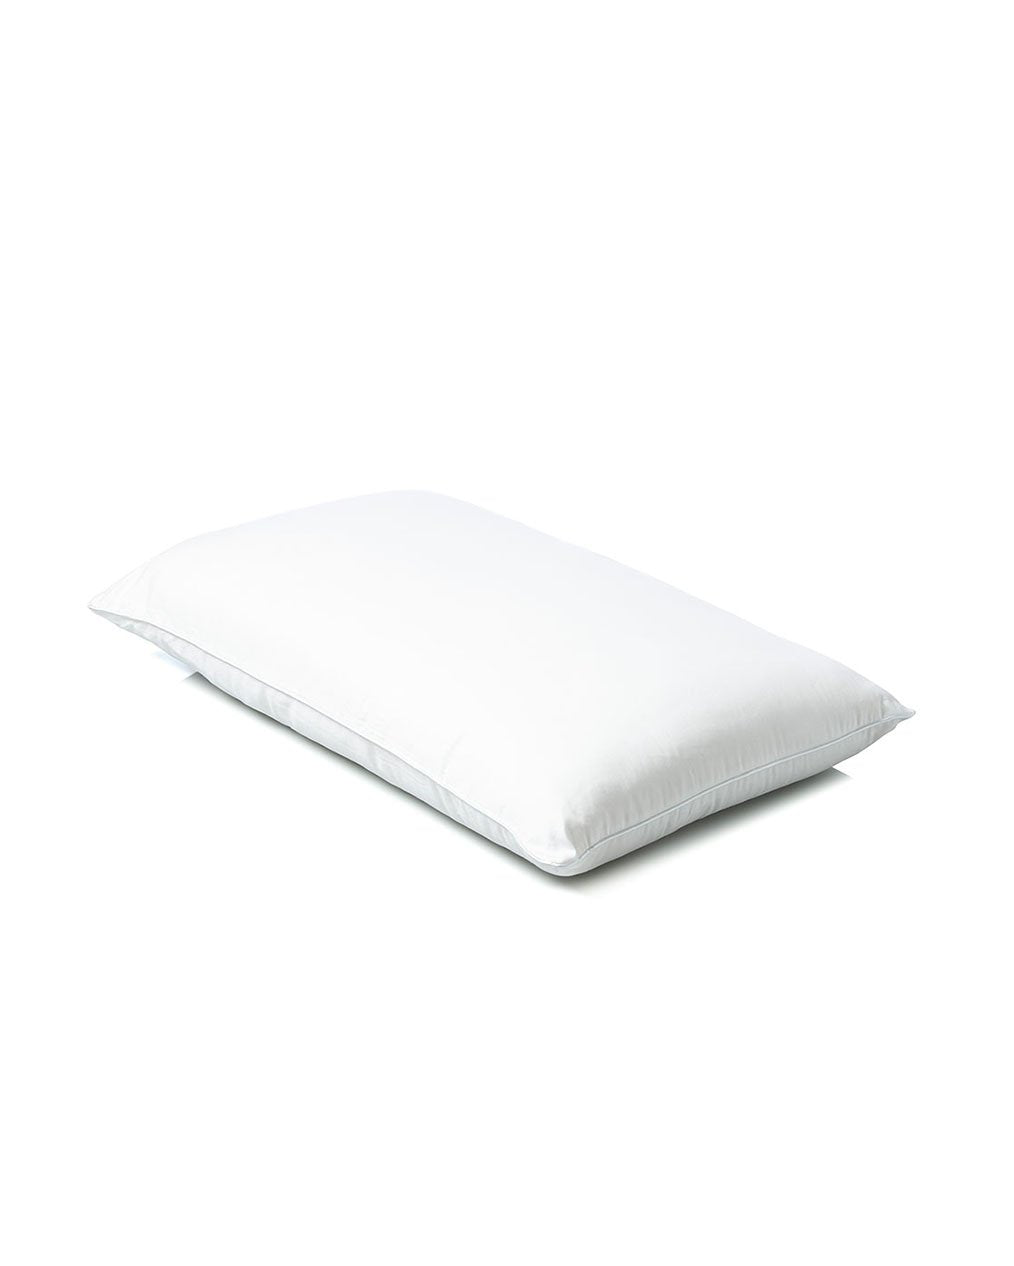 MiniJumbuk Silver Pillow - Angle